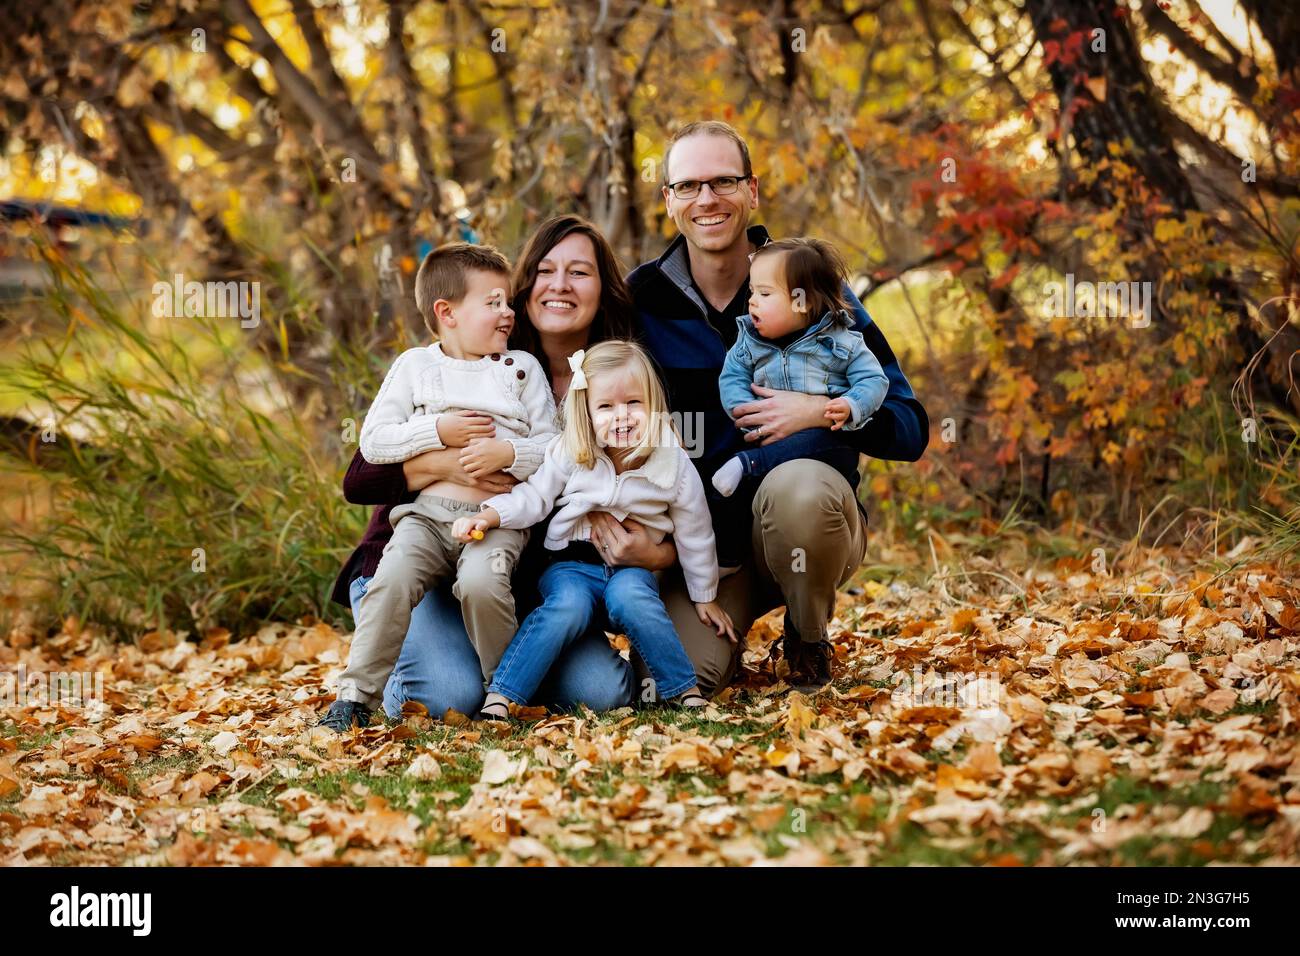 Ritratto di una giovane famiglia con tre figli, figlia più giovane con sindrome di Down, in un parco cittadino durante la stagione autunnale Foto Stock